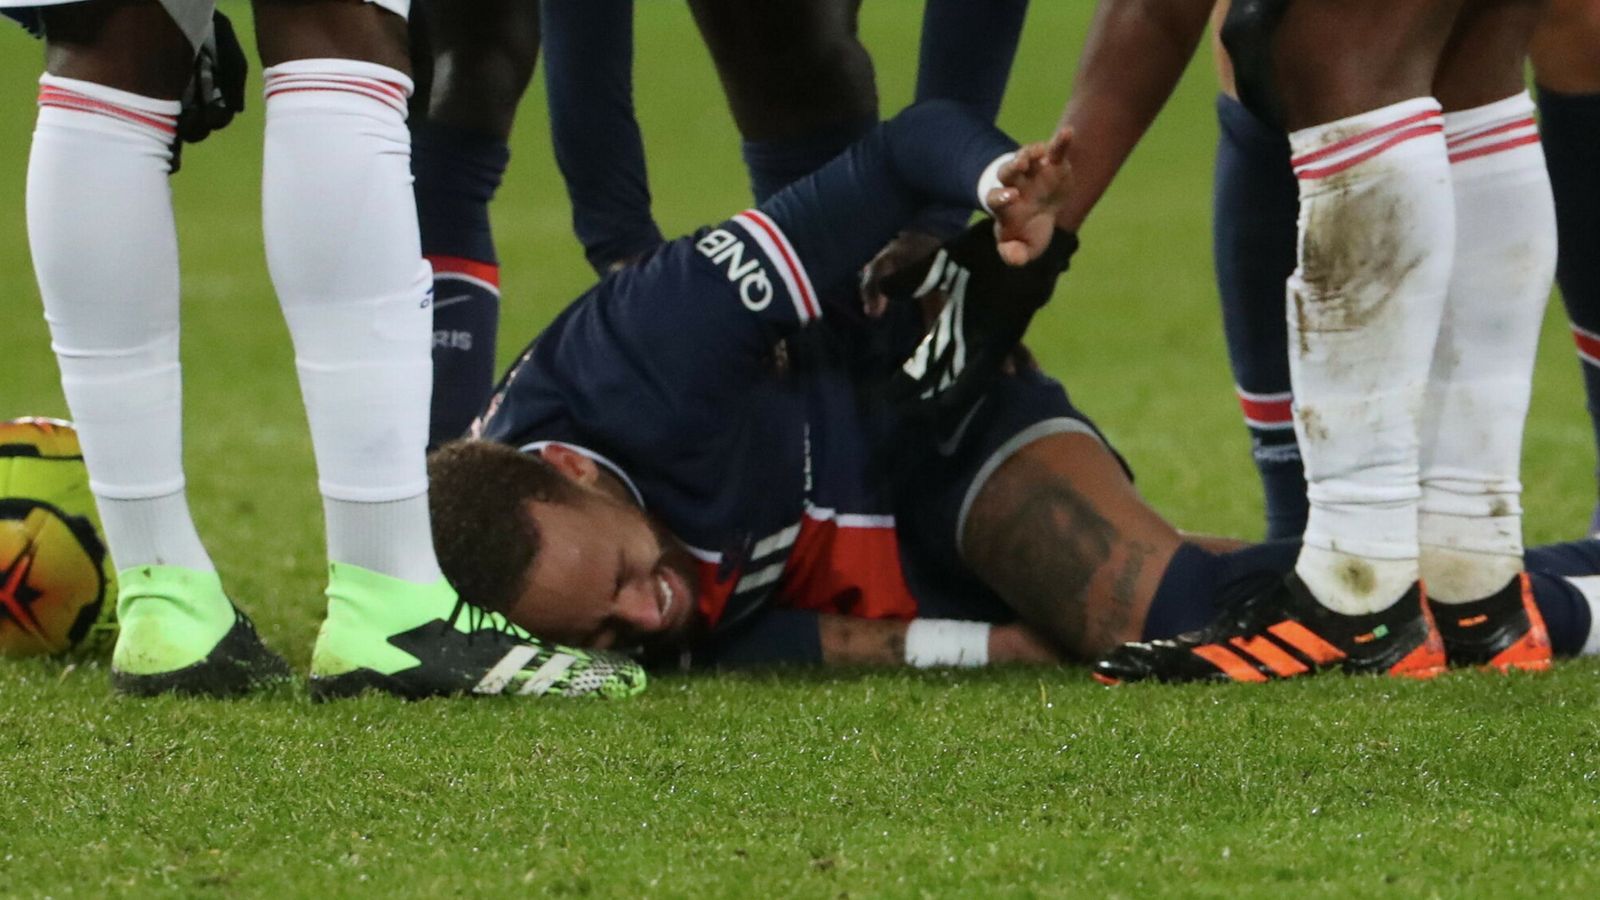 Penyerang Paris St Germain Neymar Diperkirakan Akan Kembali Pada Januari Setelah Cedera Pergelangan Kaki Berita Sepak Bola Netral News